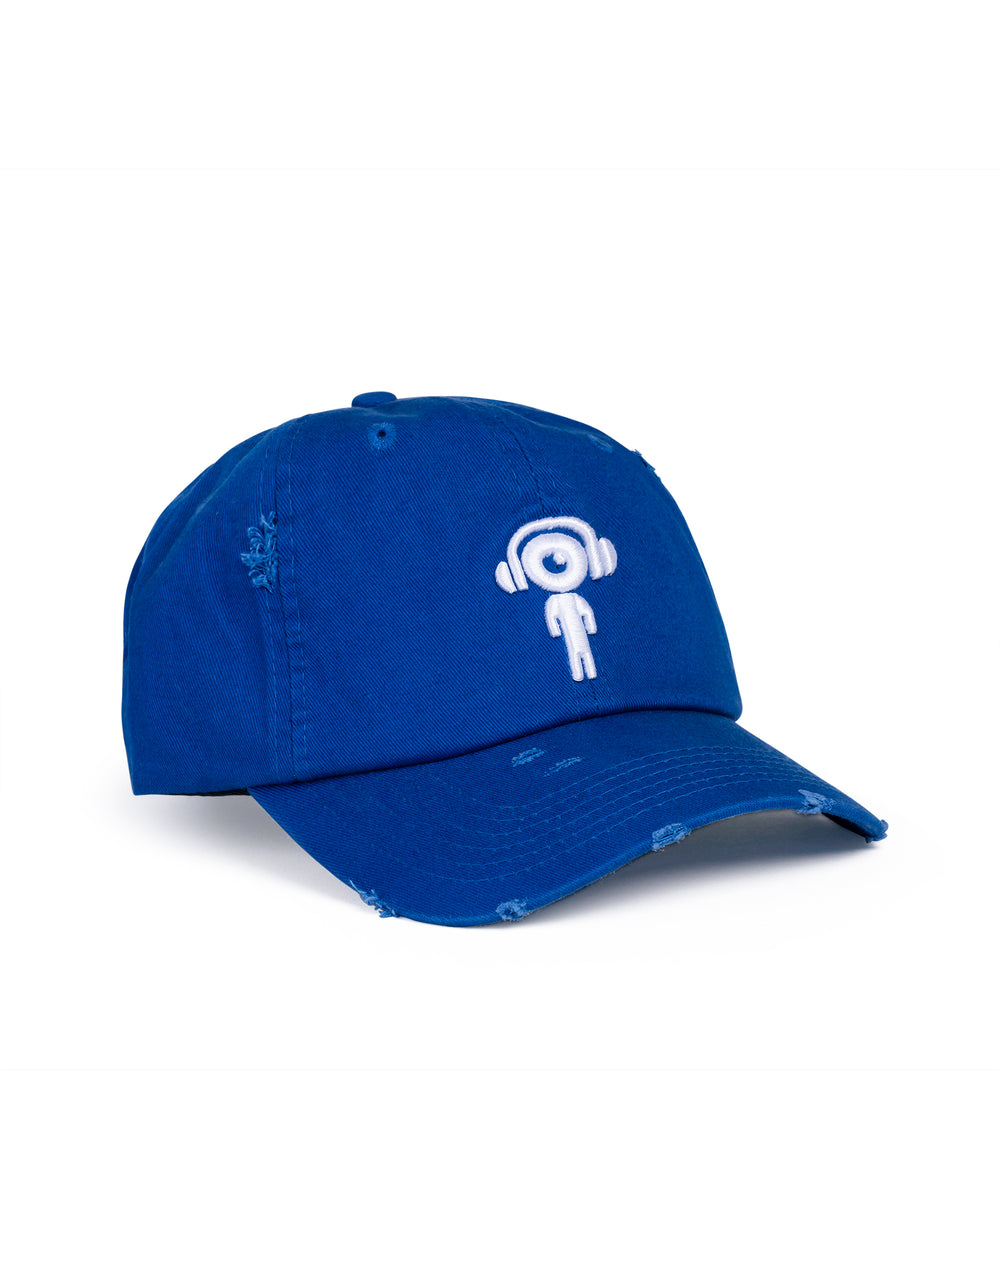 DJ TRI- Distressed Dad Hat BLUE